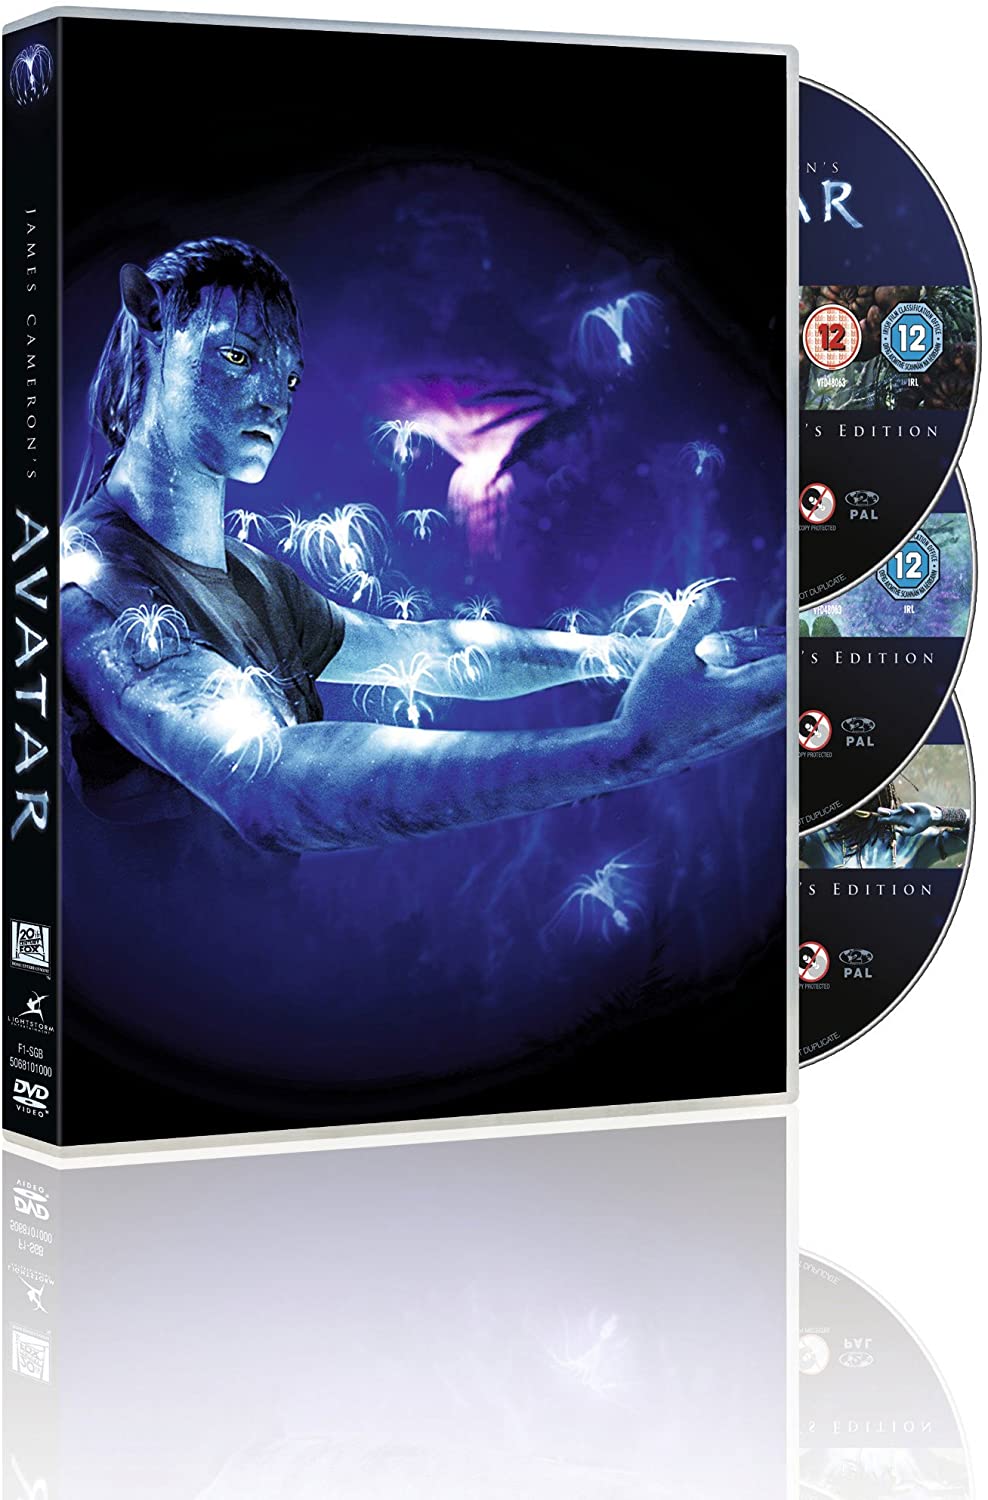 Avatar Extended [DVD]